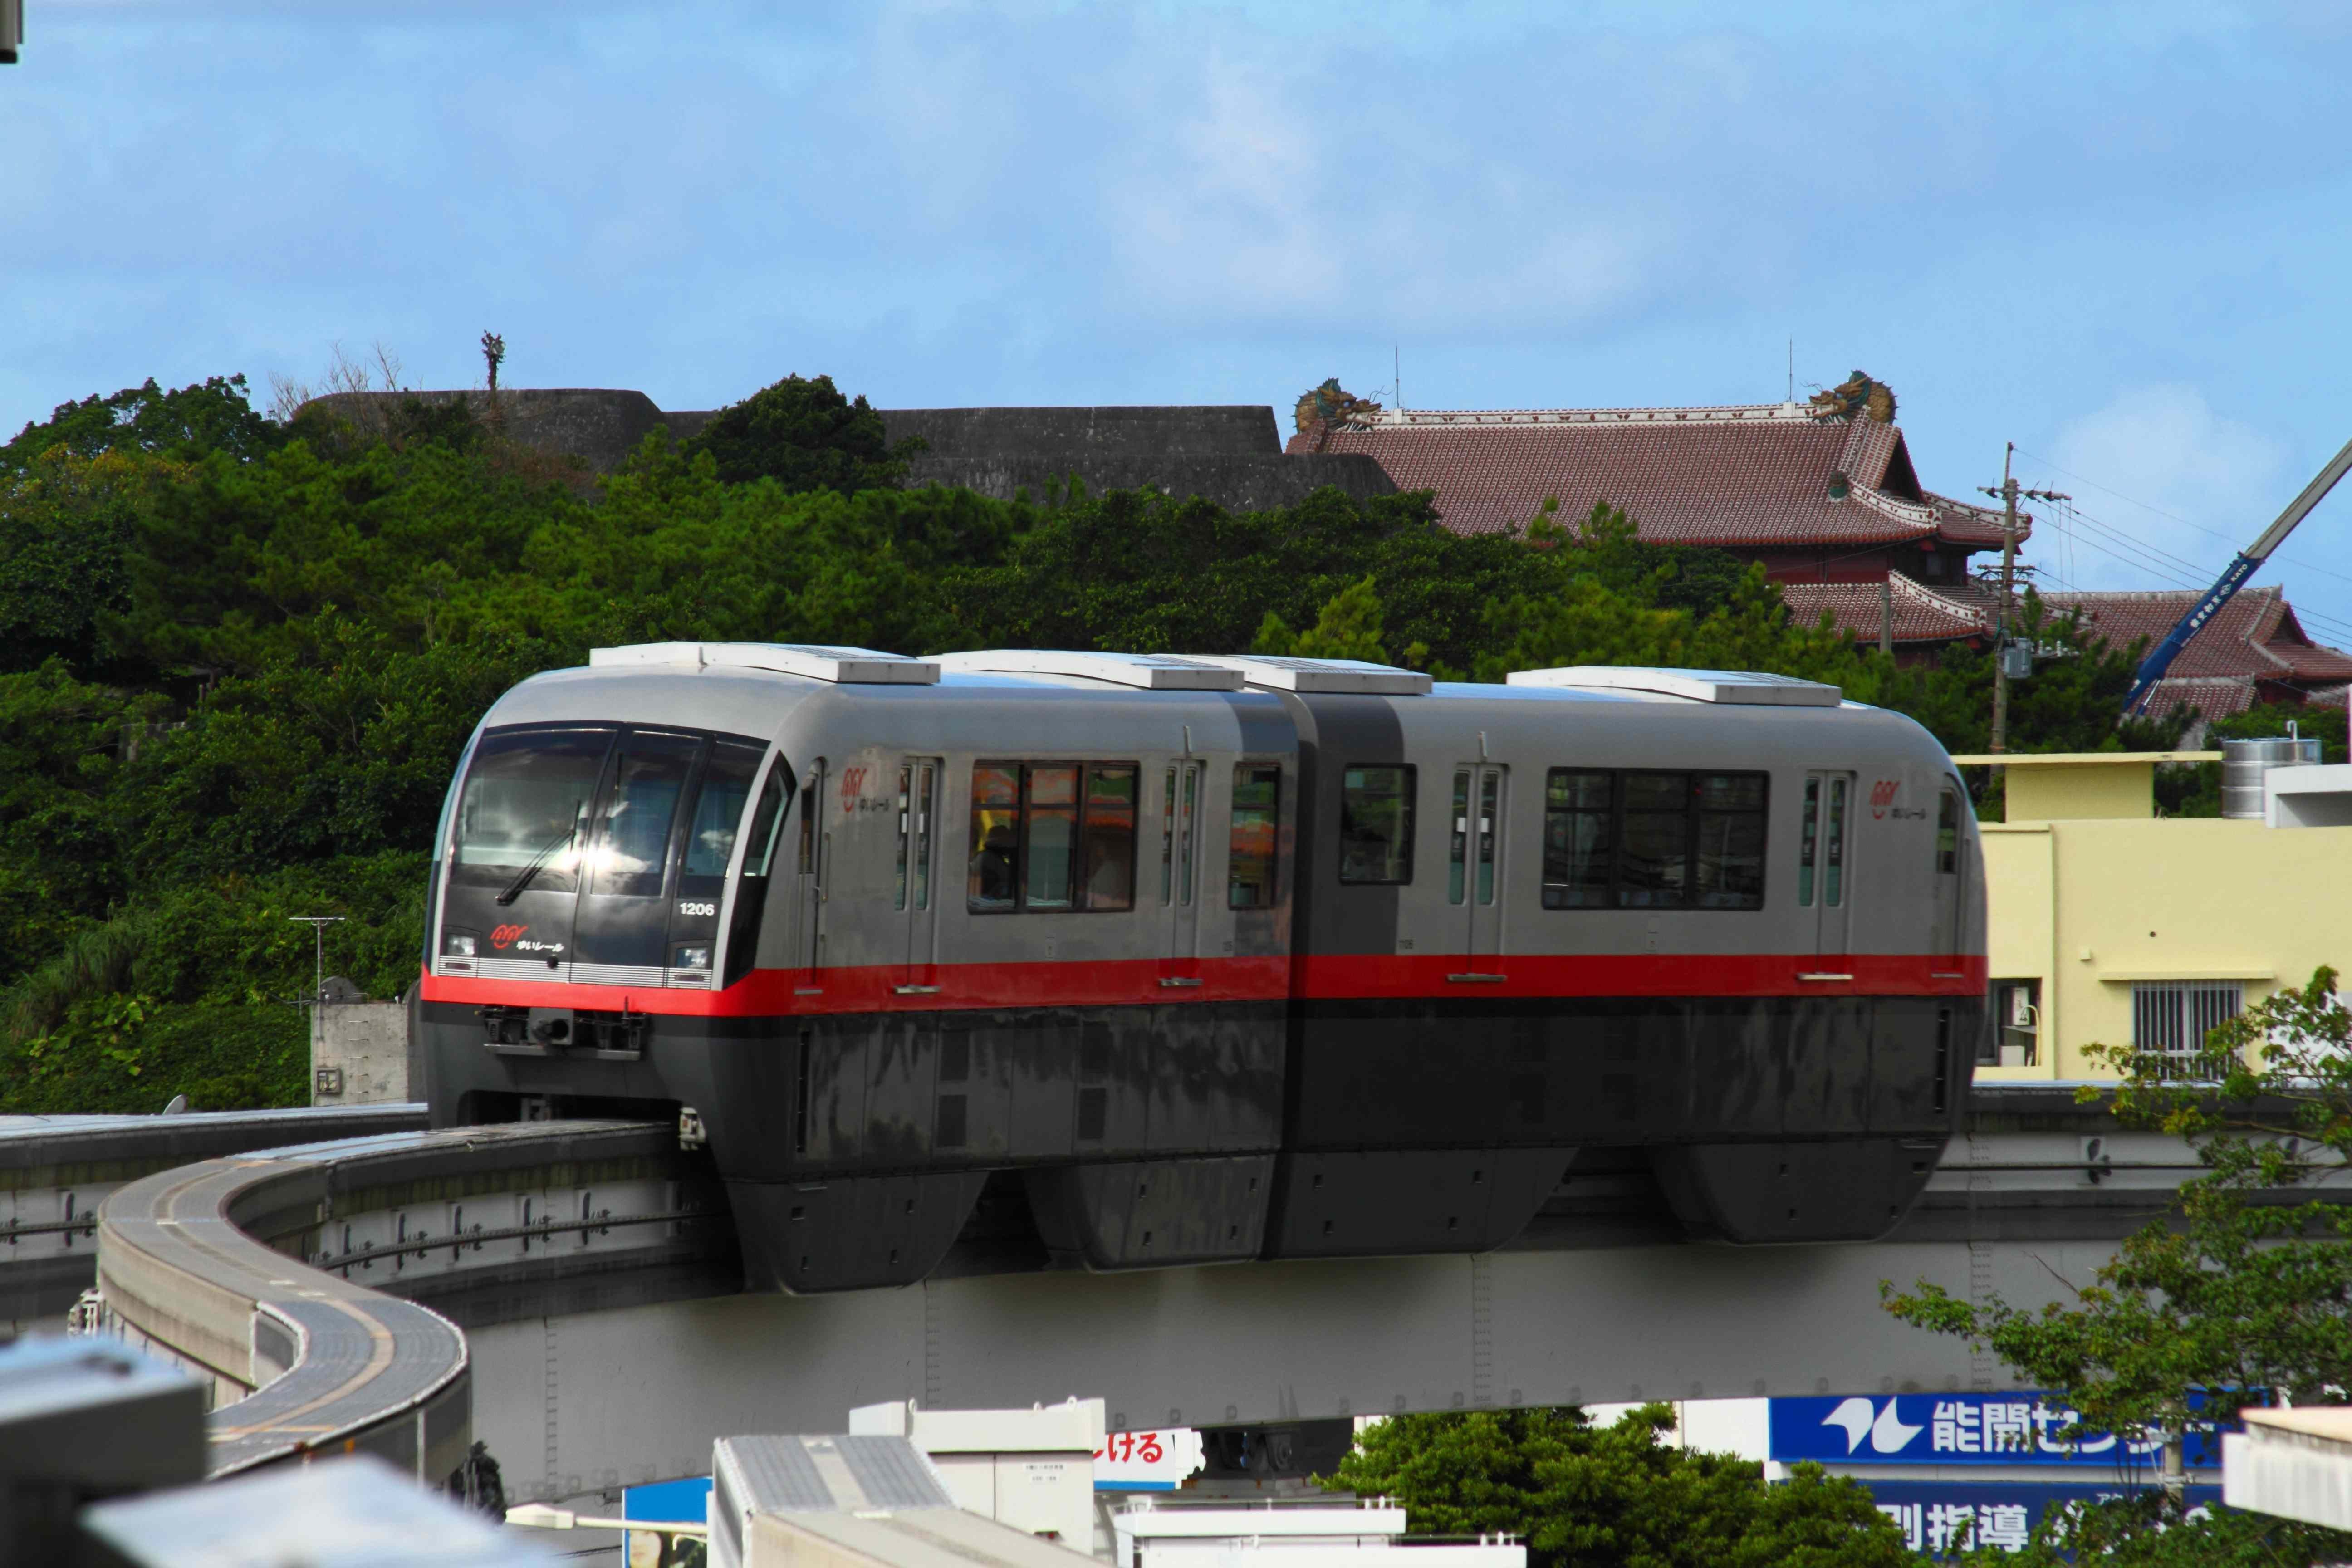 日本沖繩 不開車怎麼玩 沖繩都市單軌電車 基本資訊至沿線導覽報您知